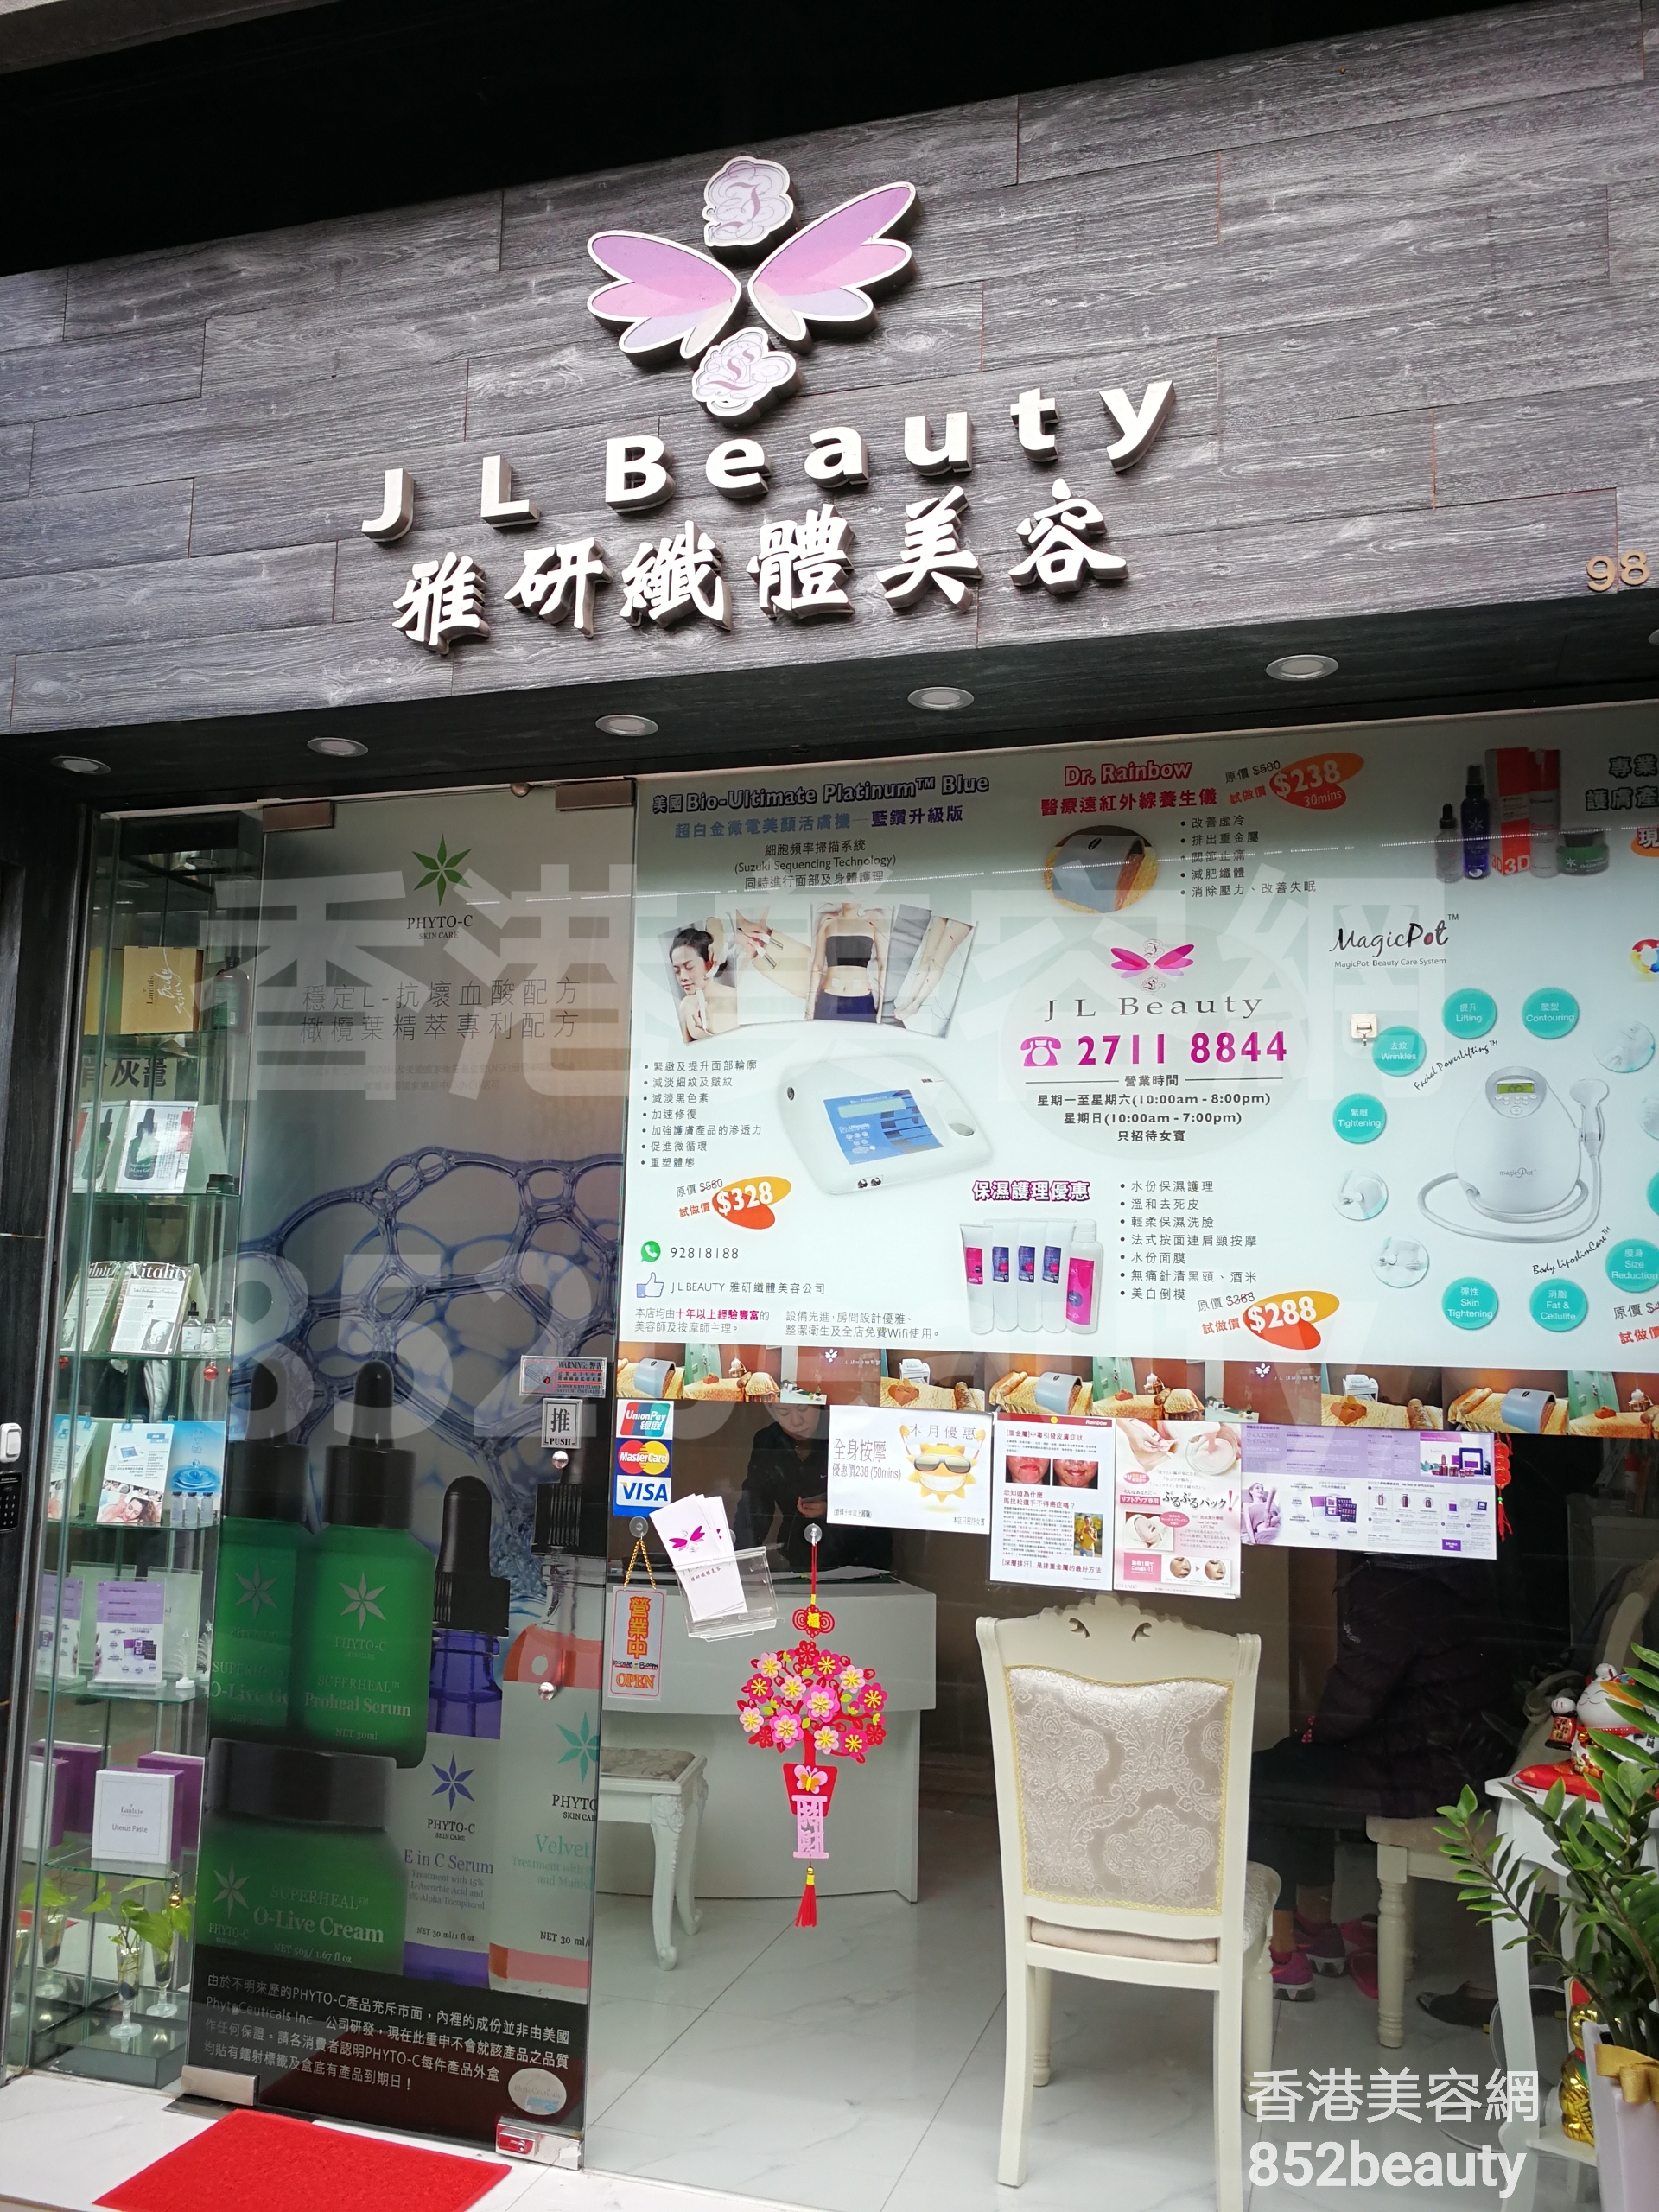 美容院 Beauty Salon: J L Beauty